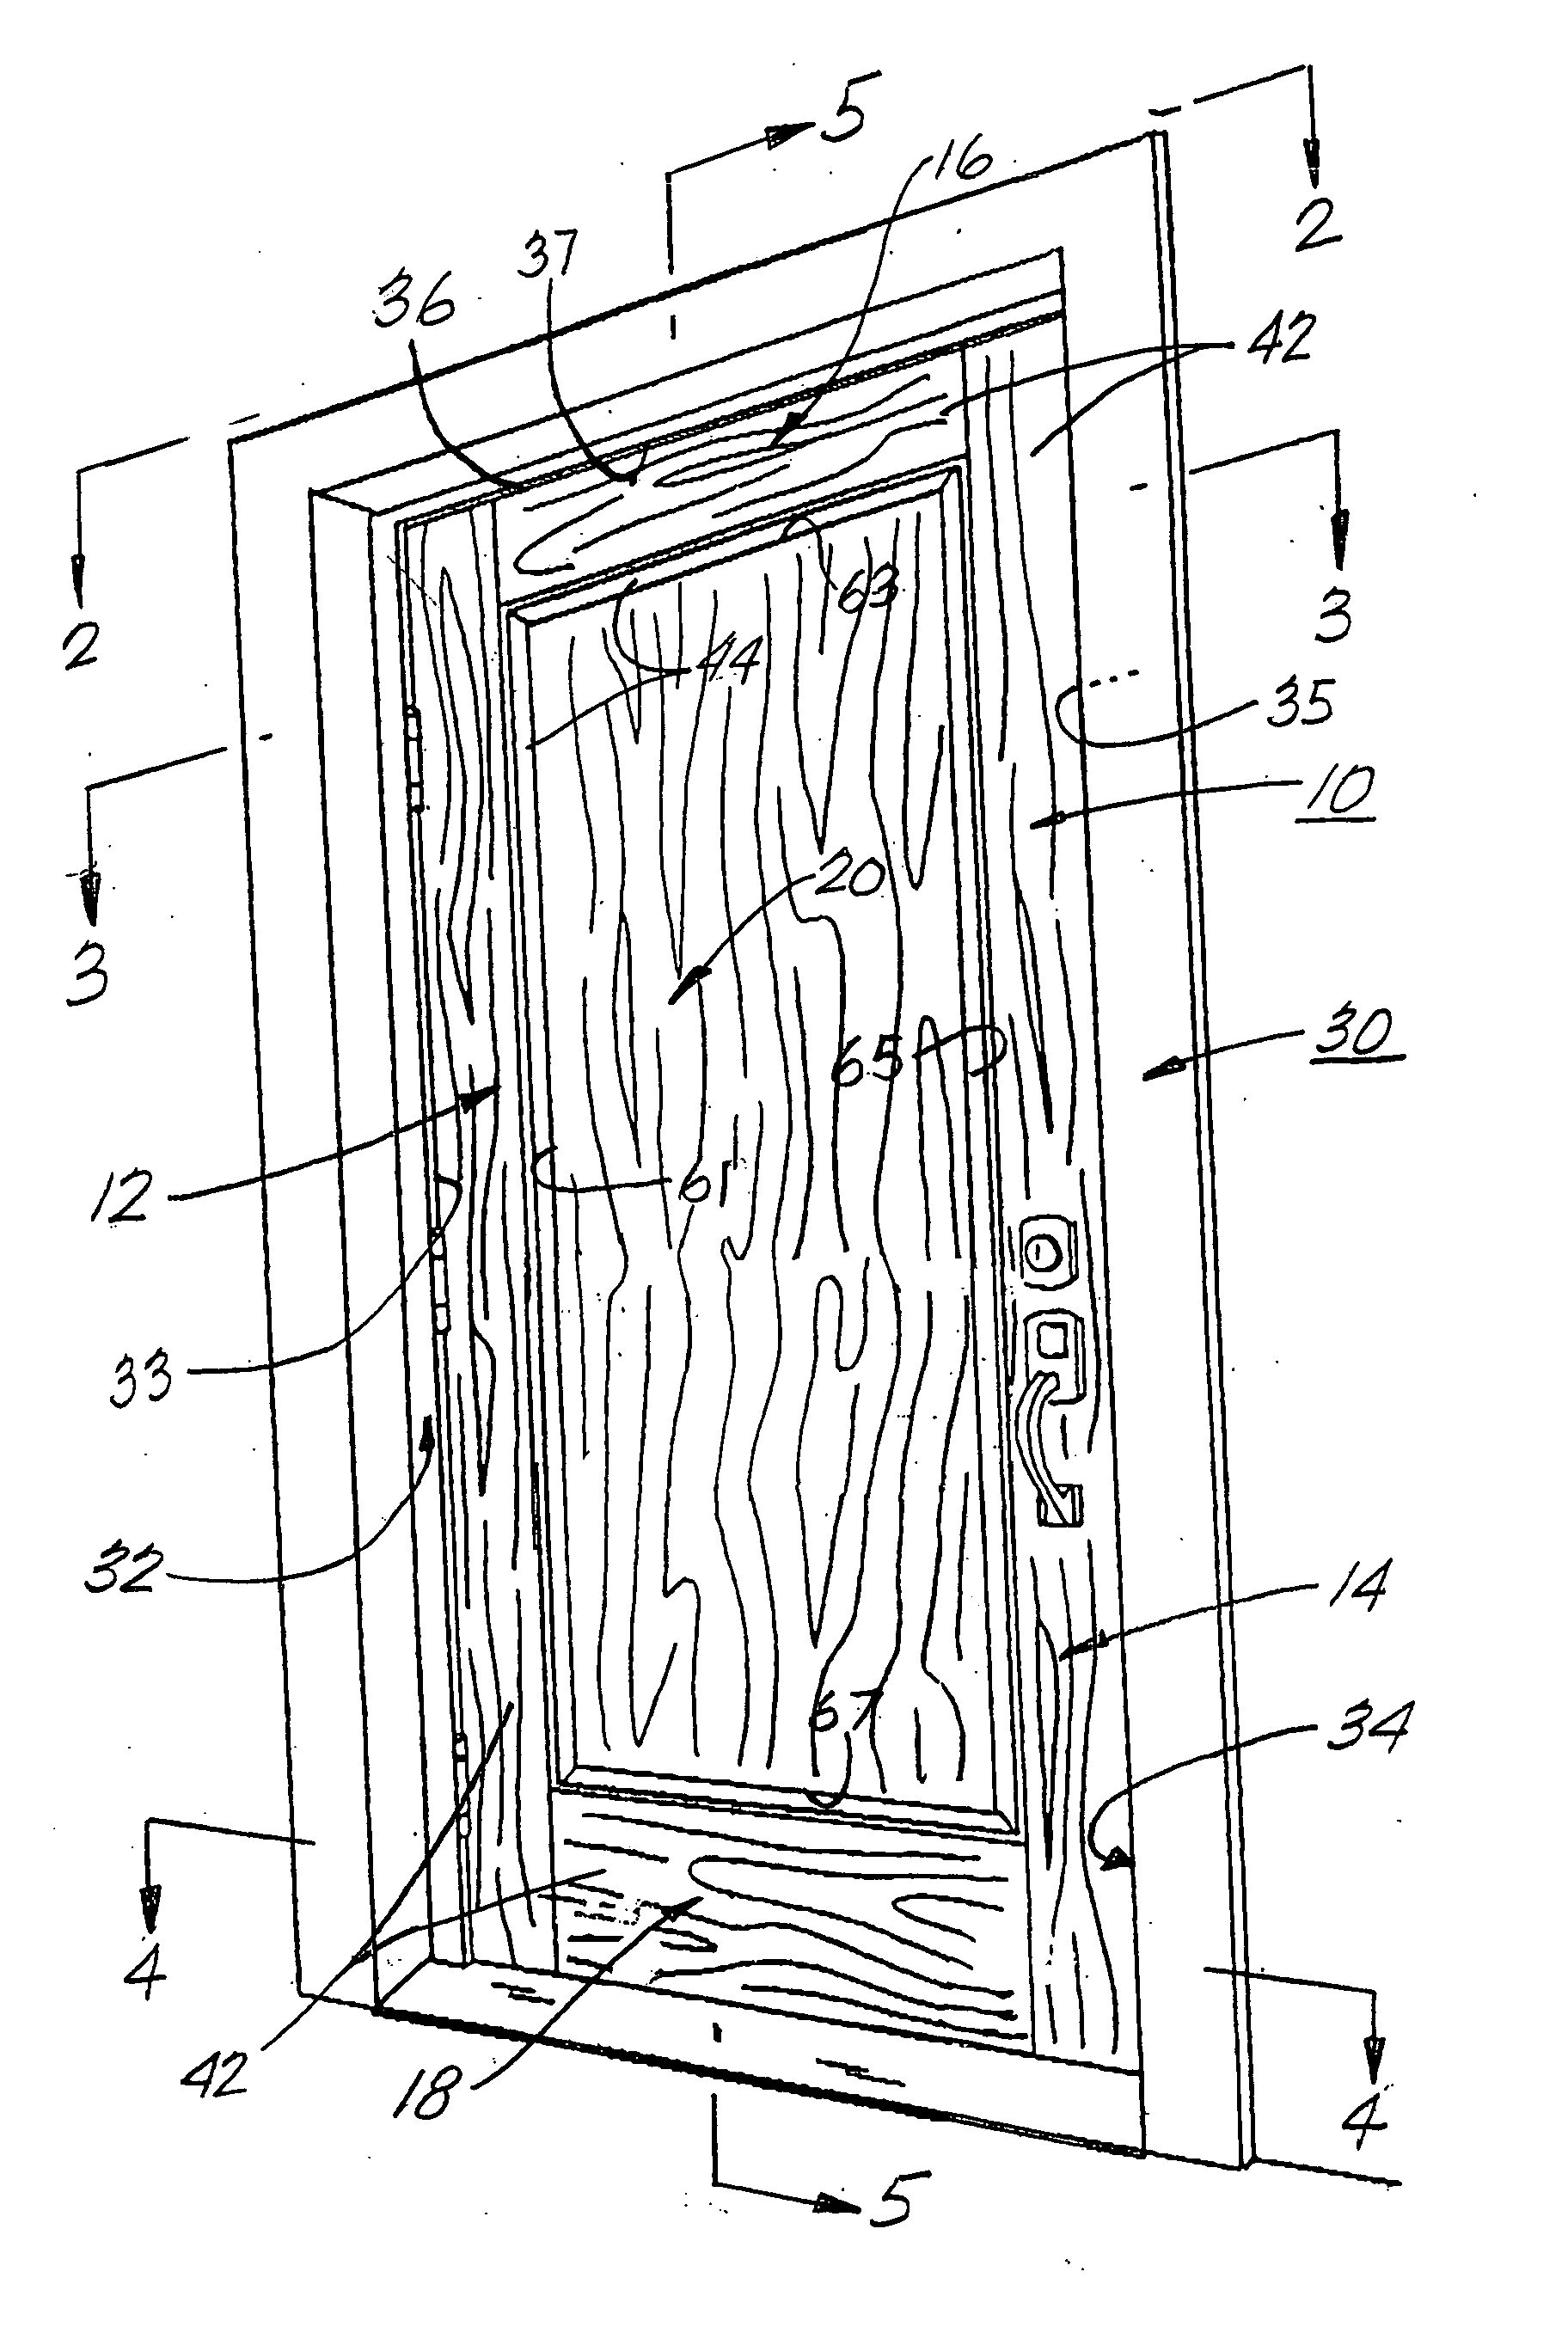 Fire retardant panel door and door frame having intumescent materials therein